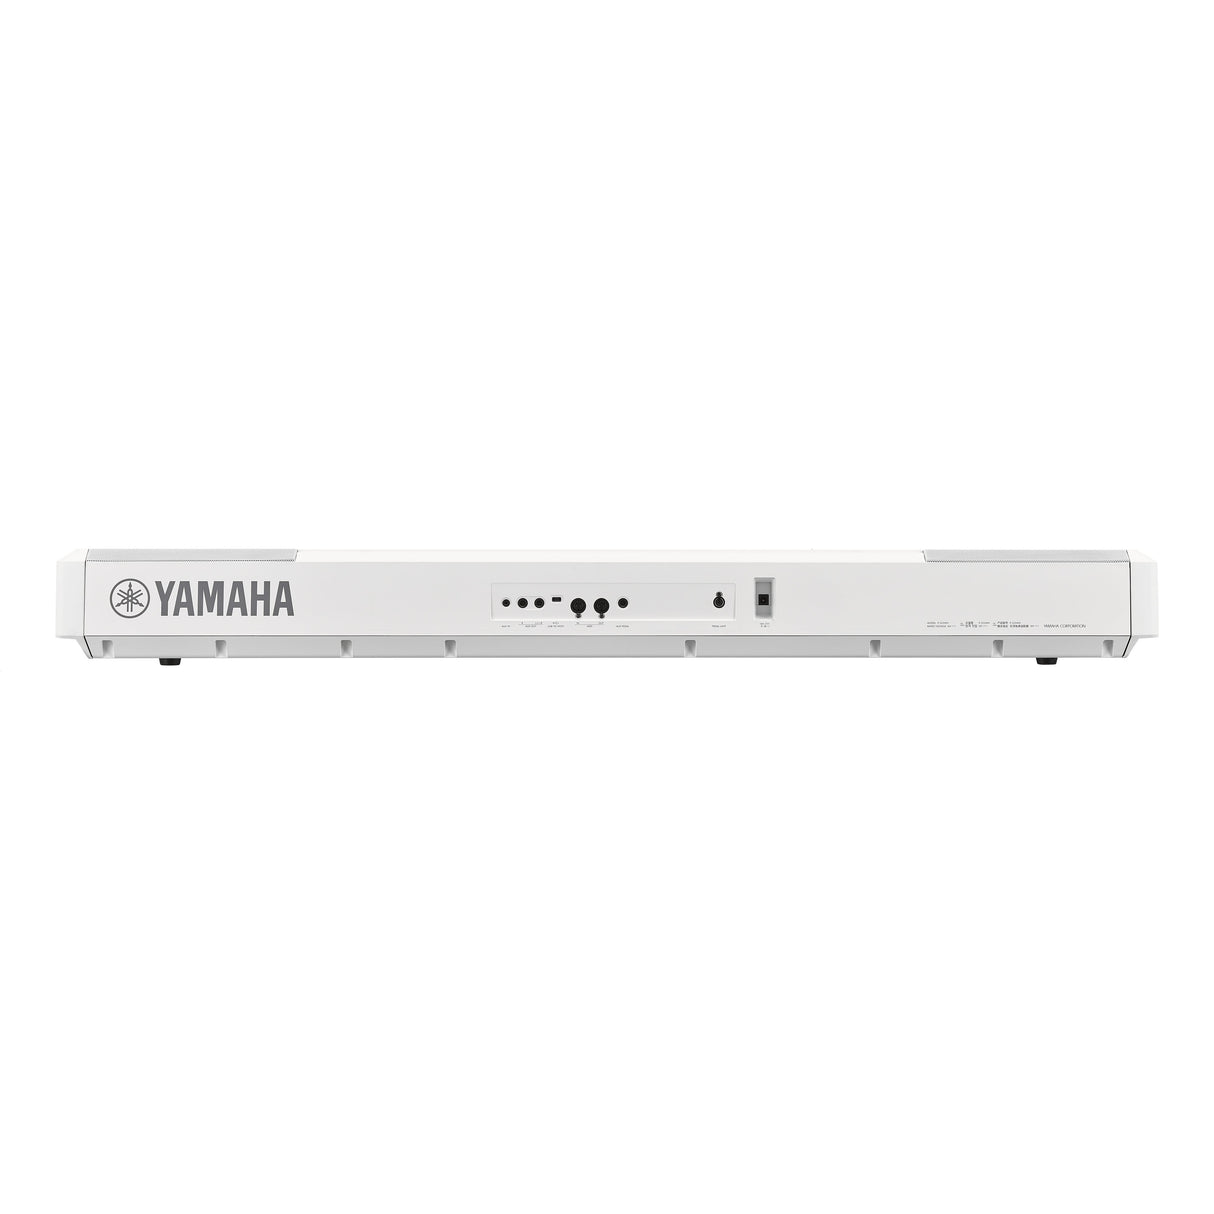 yamaha p525 white connectivity back panel